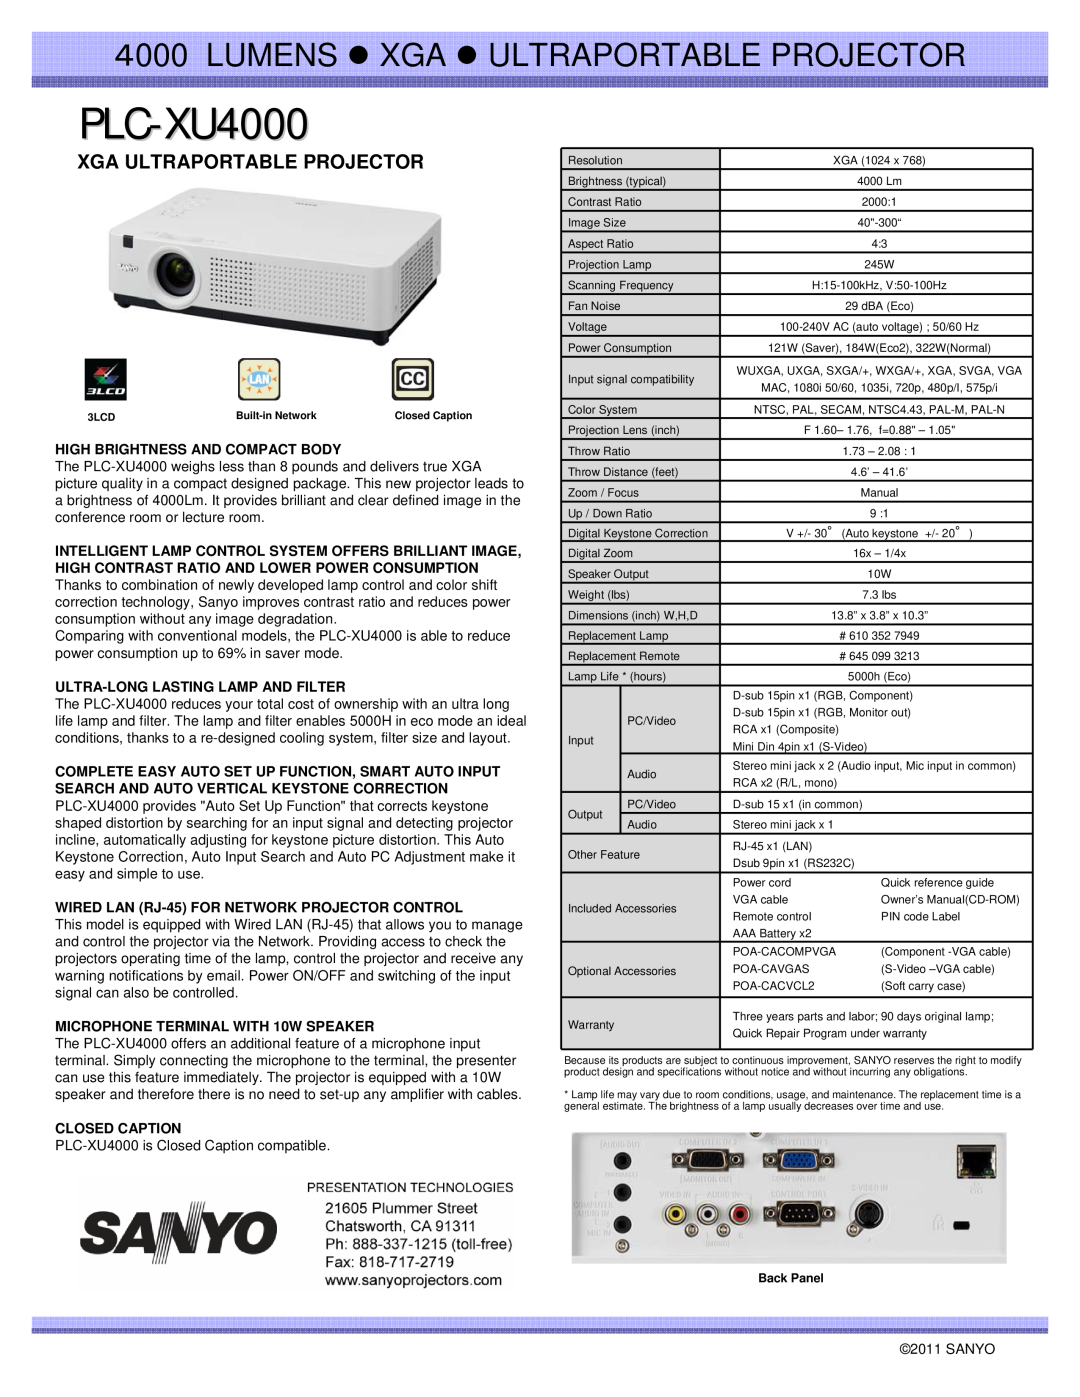 Sanyo PLC-XU4000 specifications LUMENS z XGA z ULTRAPORTABLE PROJECTOR, Xga Ultraportable Projector, Closed Caption 